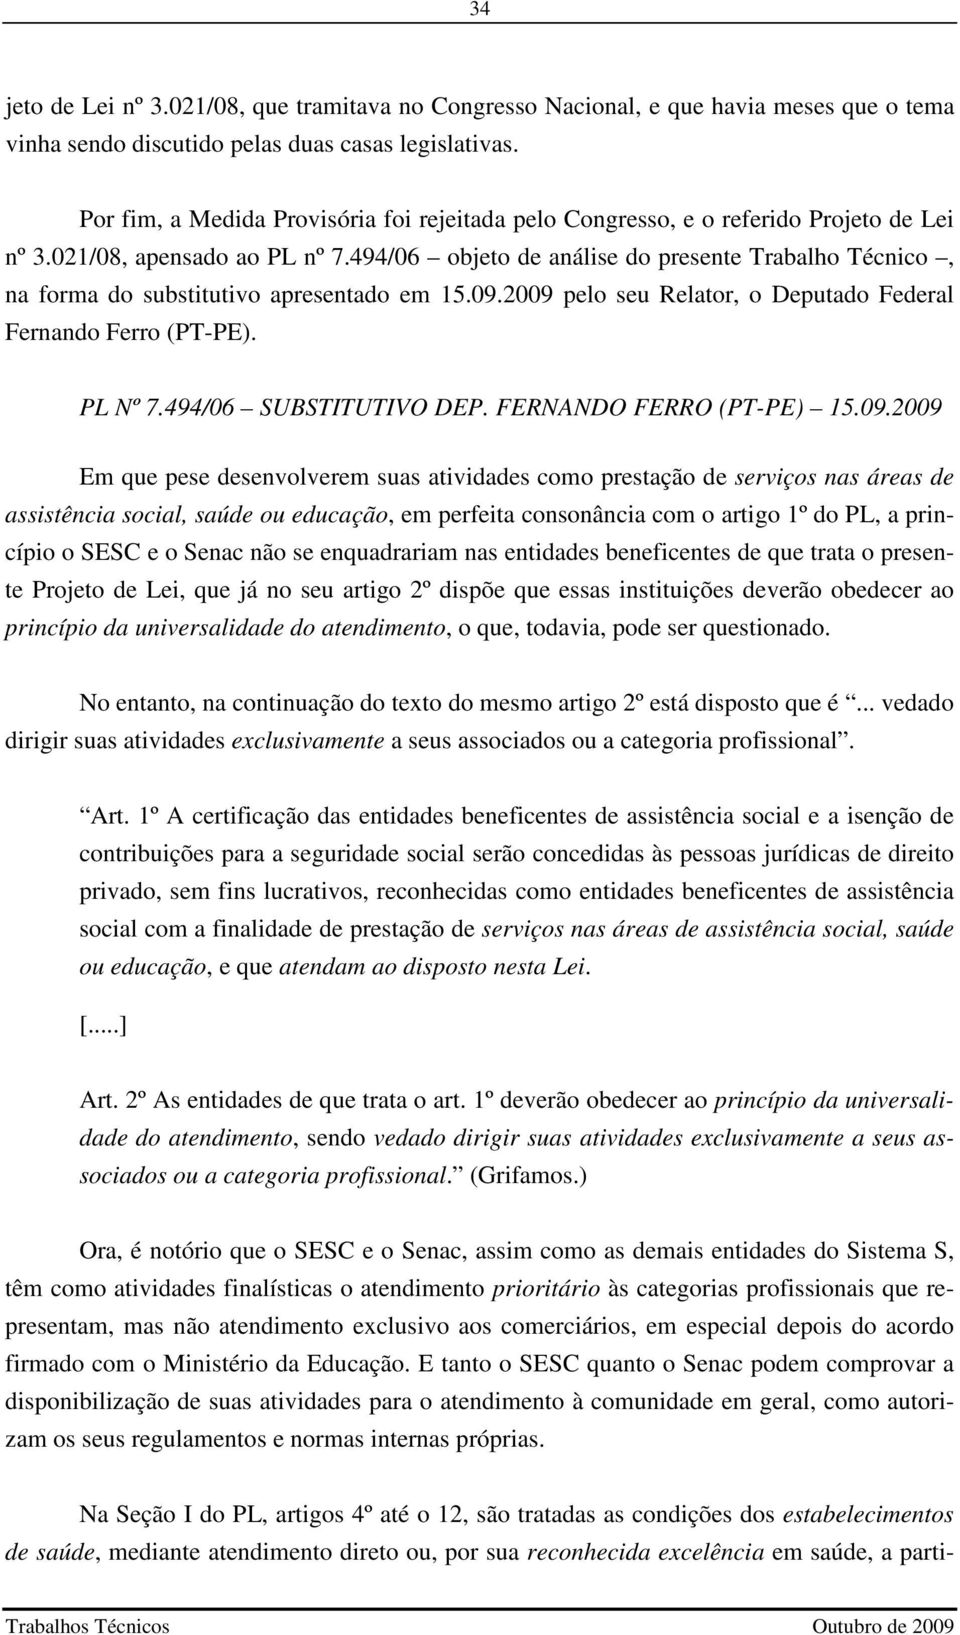 494/06 objeto de análise do presente Trabalho Técnico, na forma do substitutivo apresentado em 15.09.2009 pelo seu Relator, o Deputado Federal Fernando Ferro (PT-PE). PL Nº 7.494/06 SUBSTITUTIVO DEP.